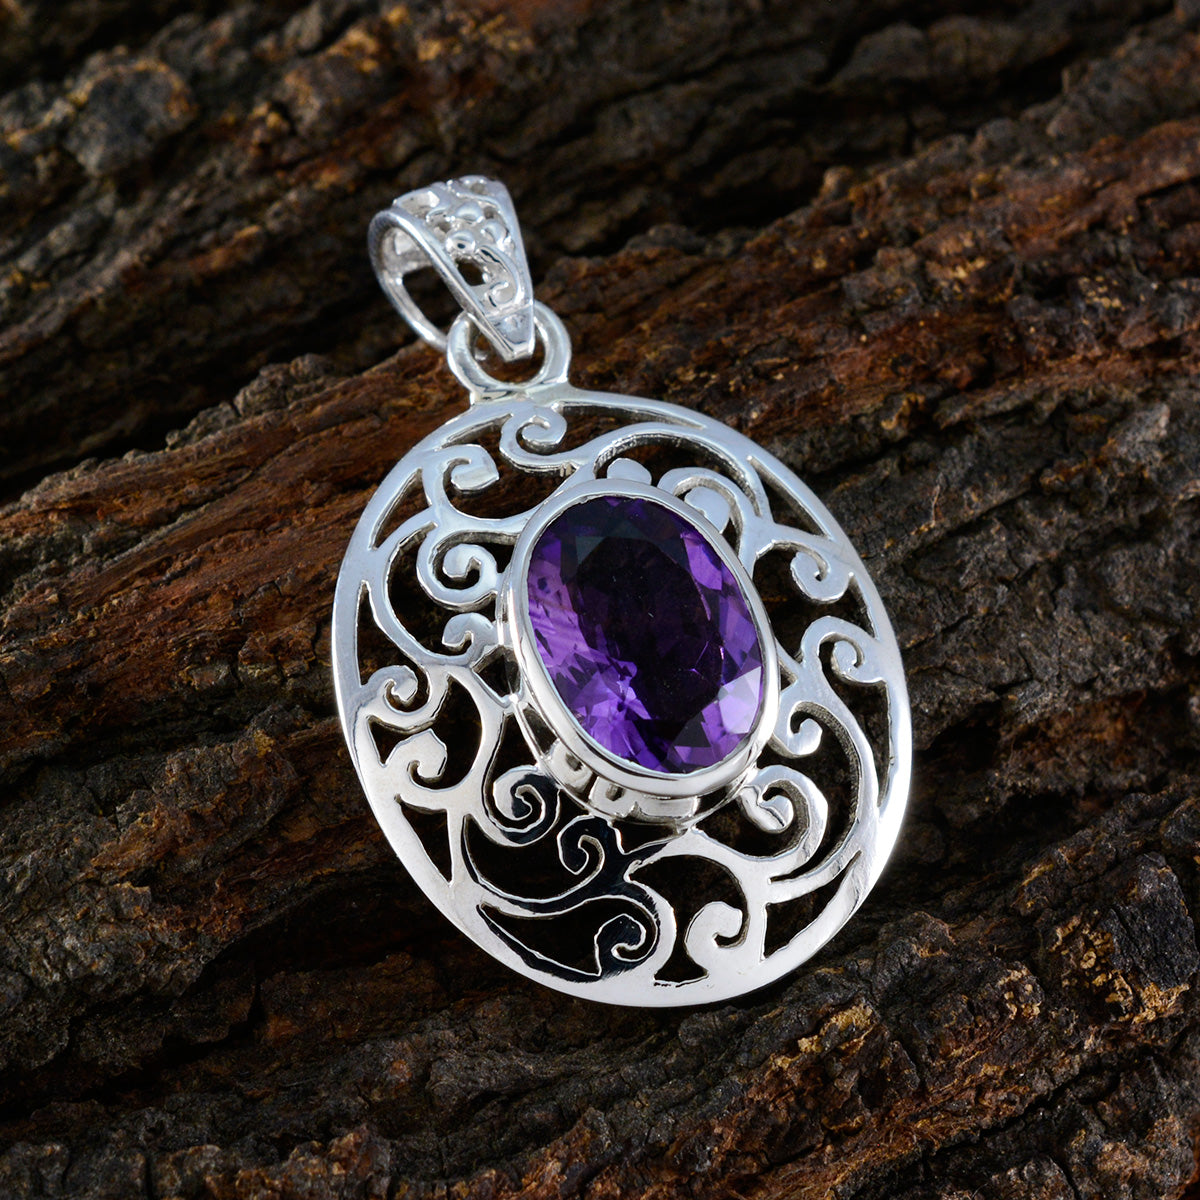 Riyo véritable pierre précieuse ovale à facettes violet améthyste pendentif en argent sterling cadeau pour la main